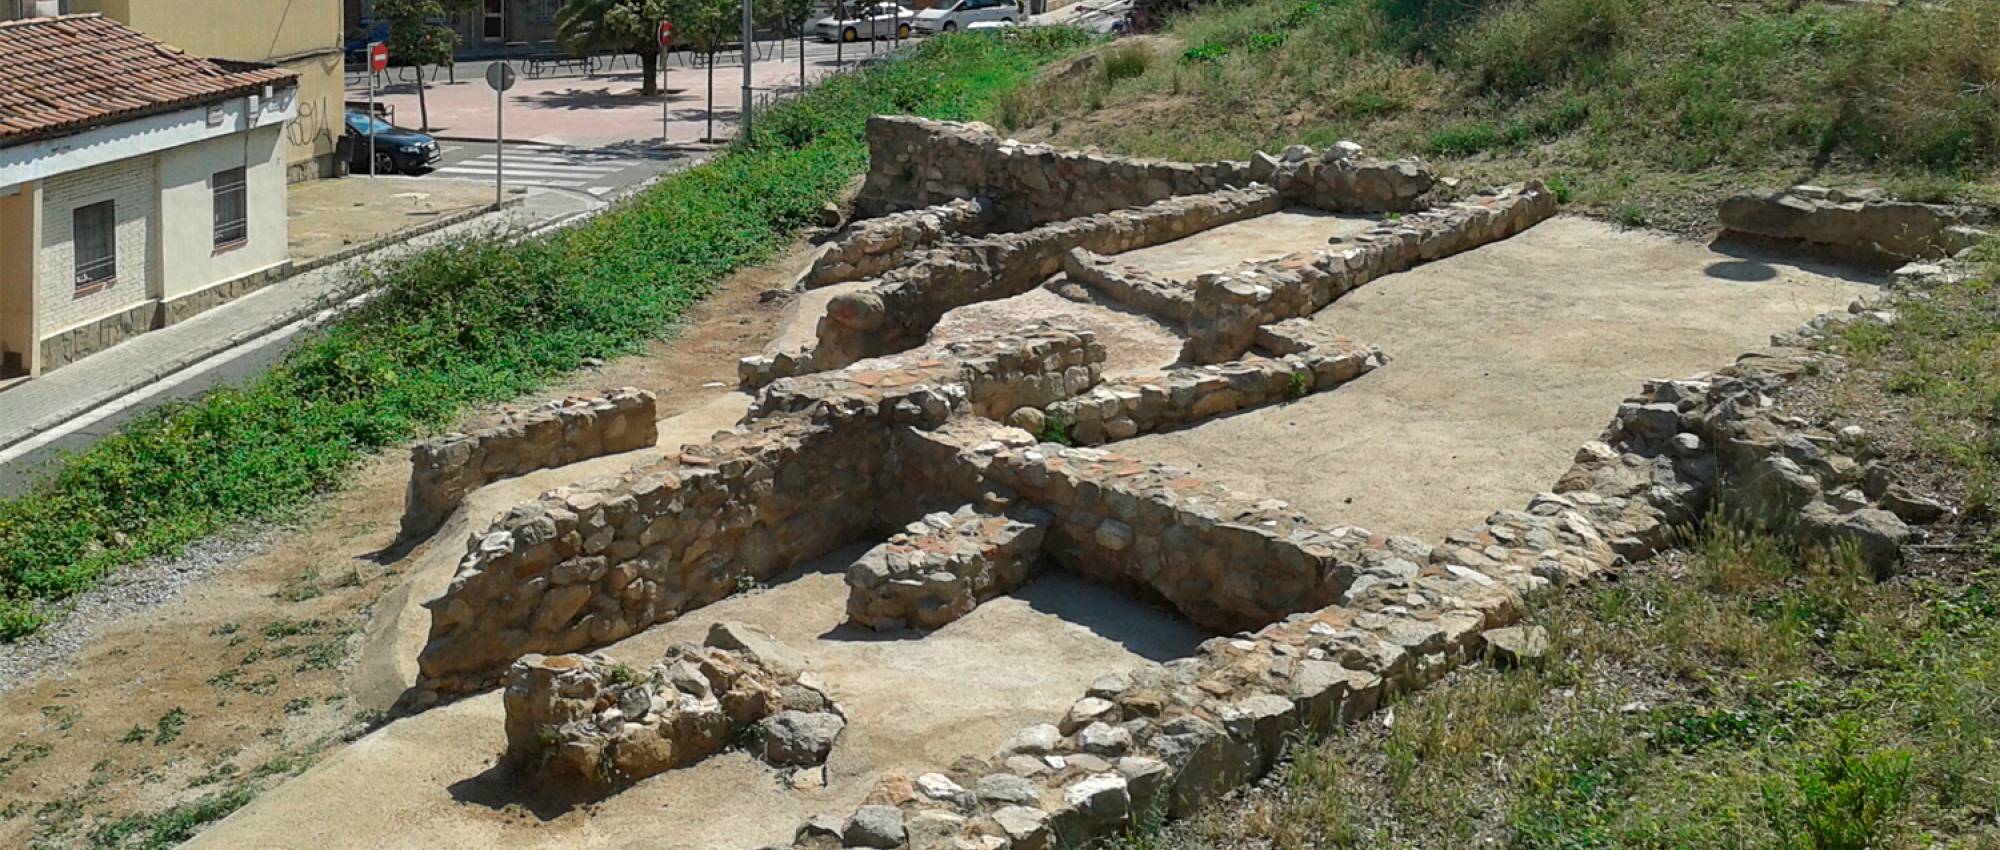 Restes de la Vil·la dels Caputxins, a Mataró. CC By-SA 3.0 -Vàngelis Villar / Wikimedia Commons